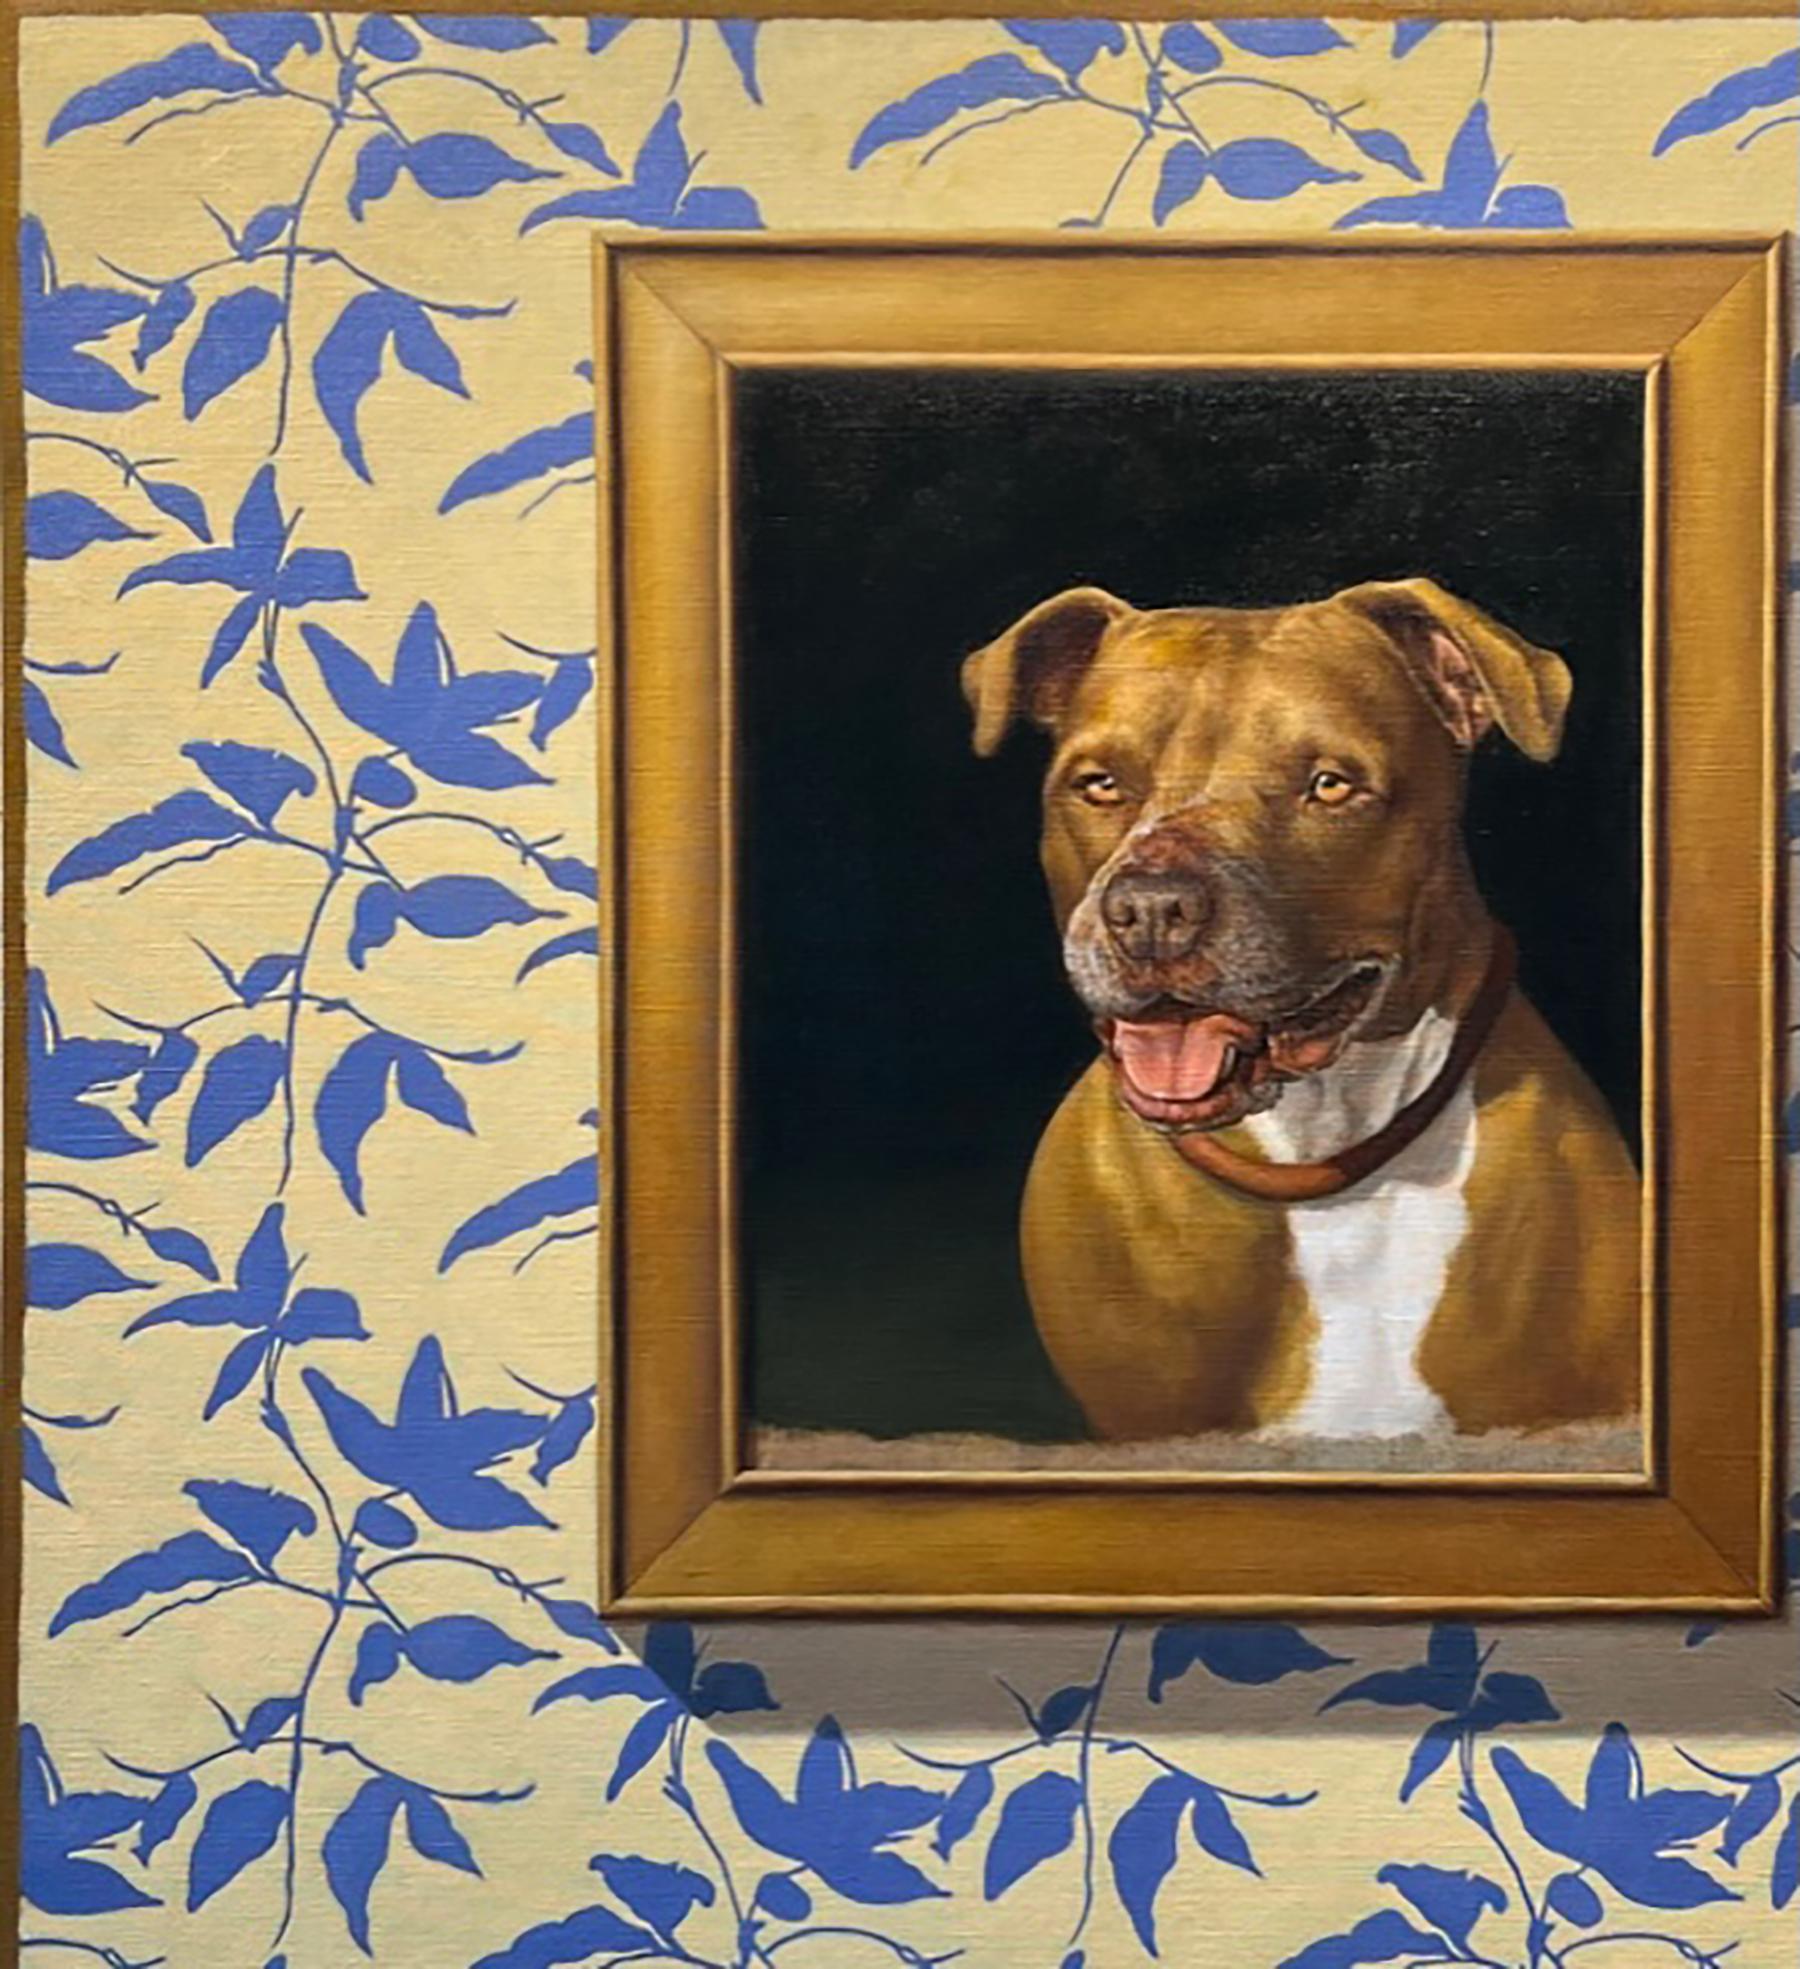 Animal Painting Edward Butler - WALLPAPER, FRAME, DOG - Réalisme / Humor / Pitbull